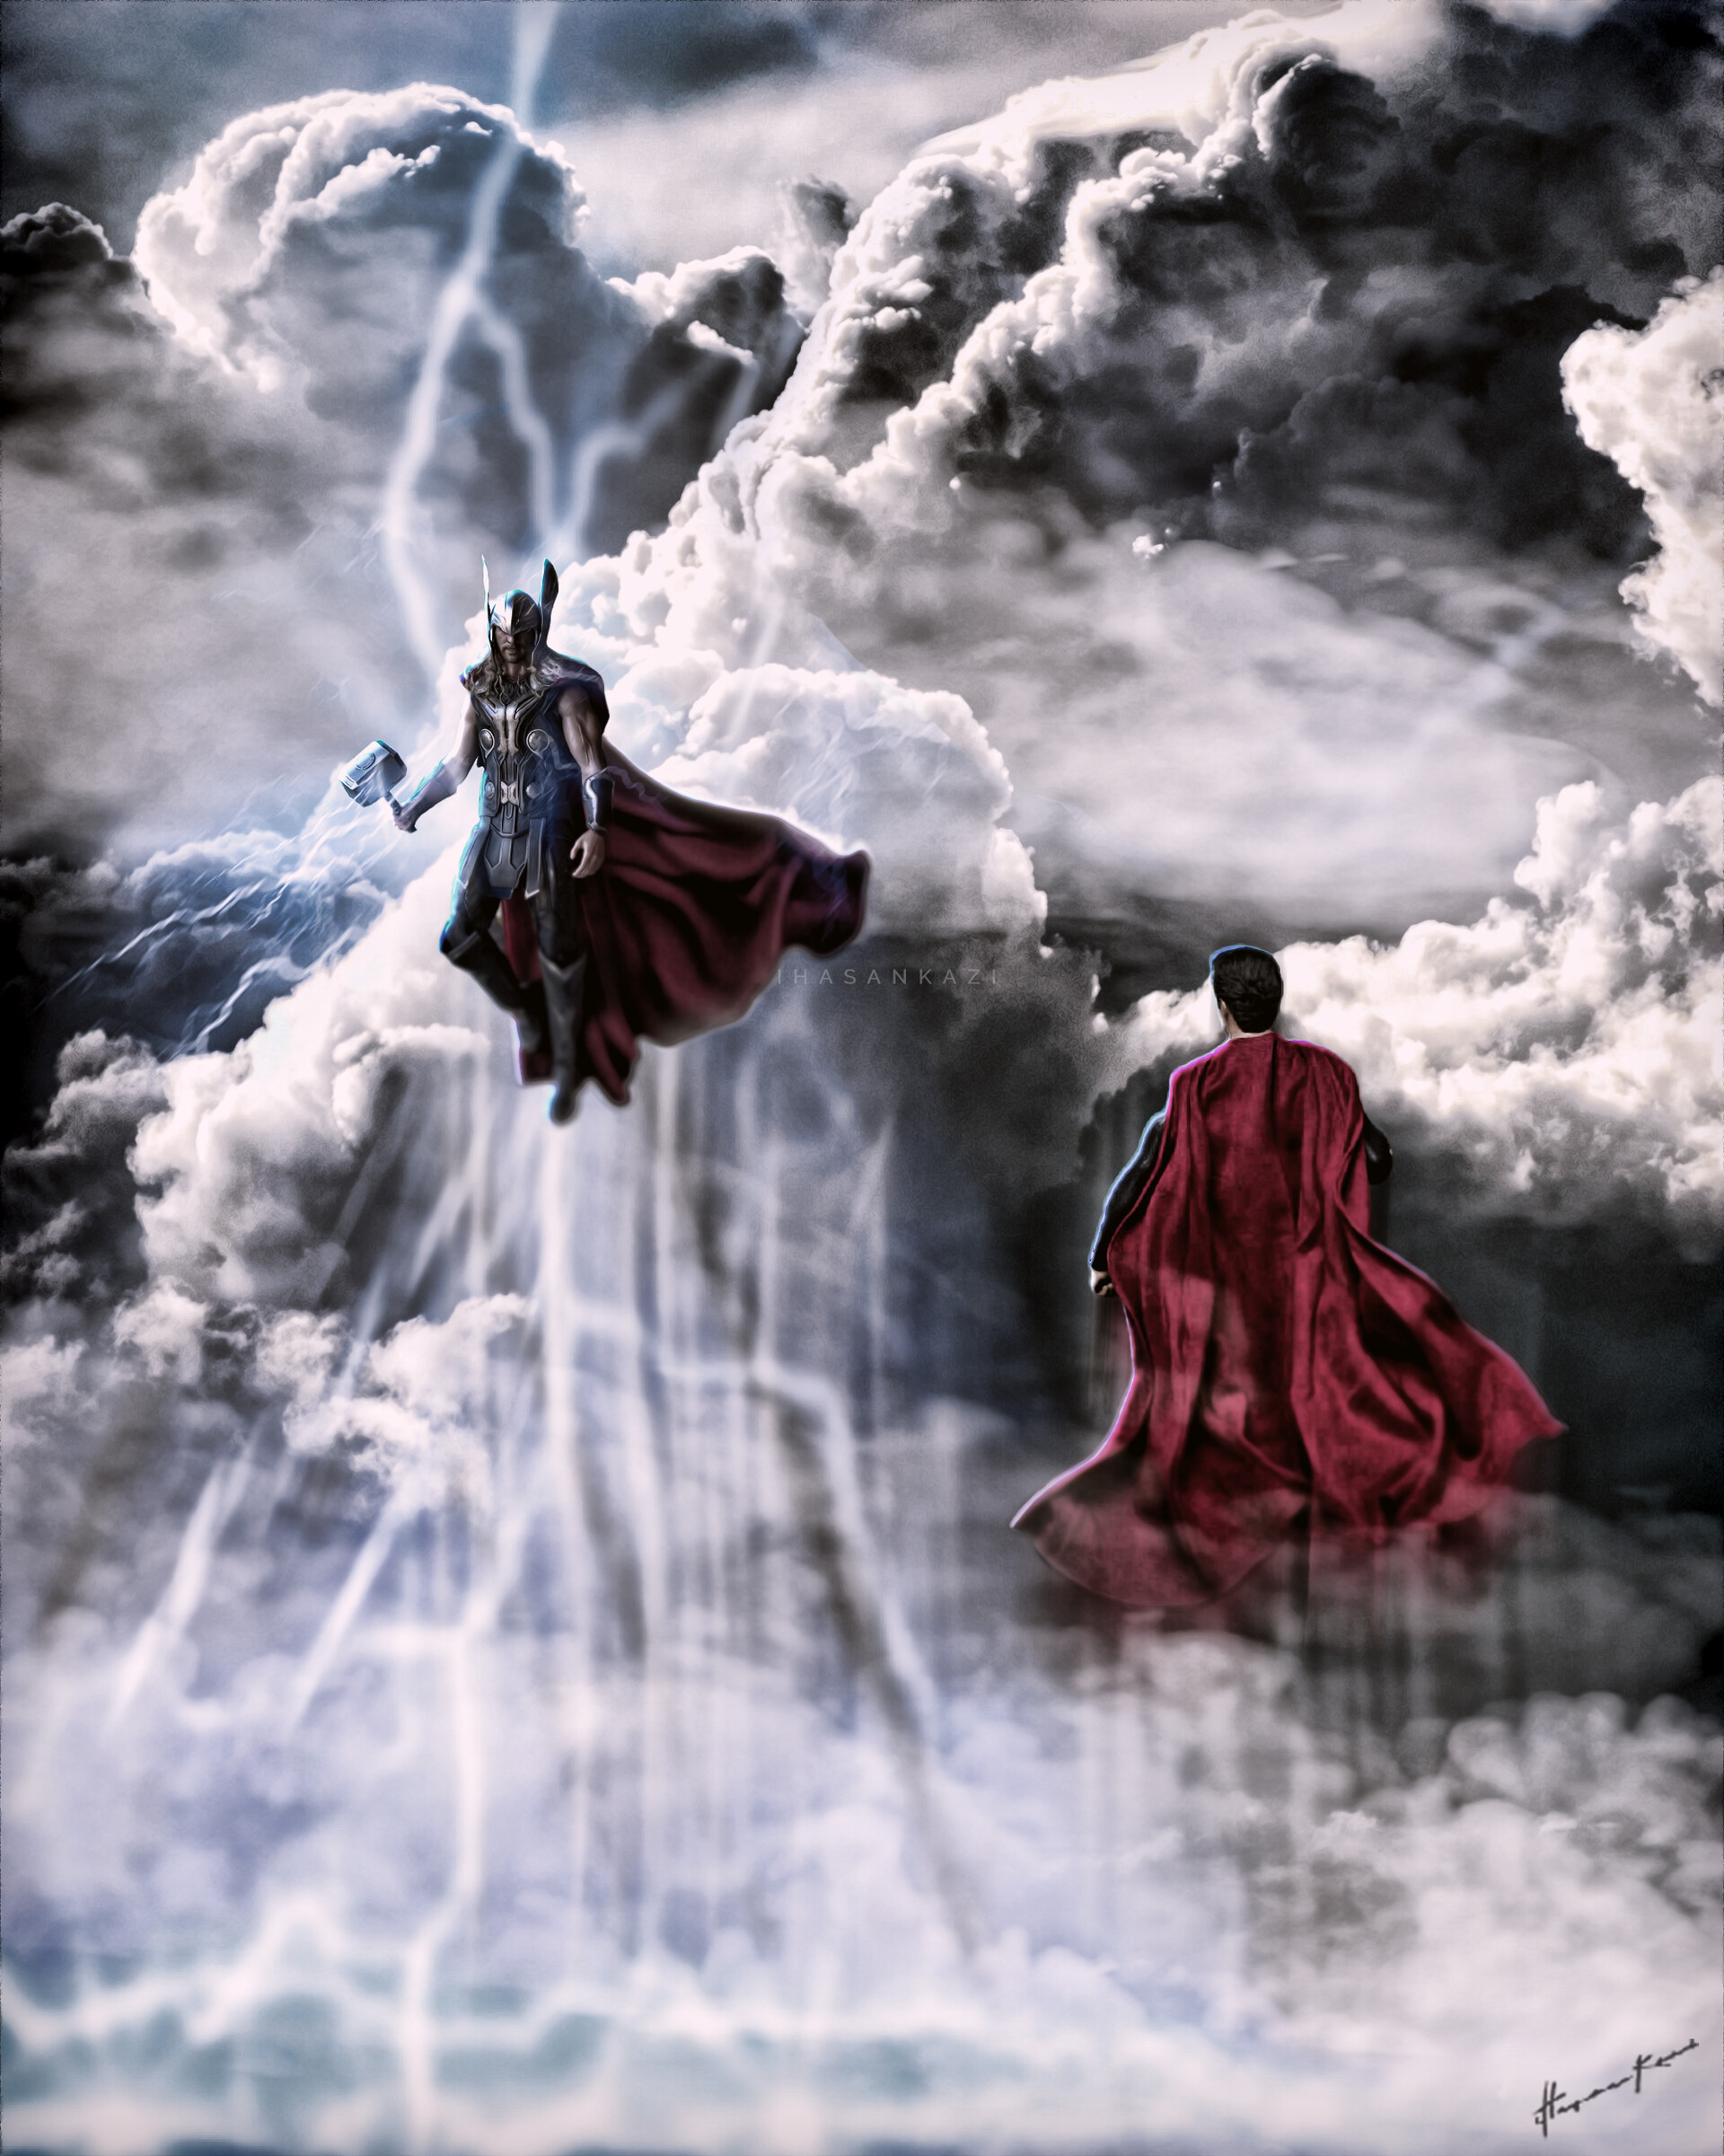 Son of Odin vs Son of Krypton